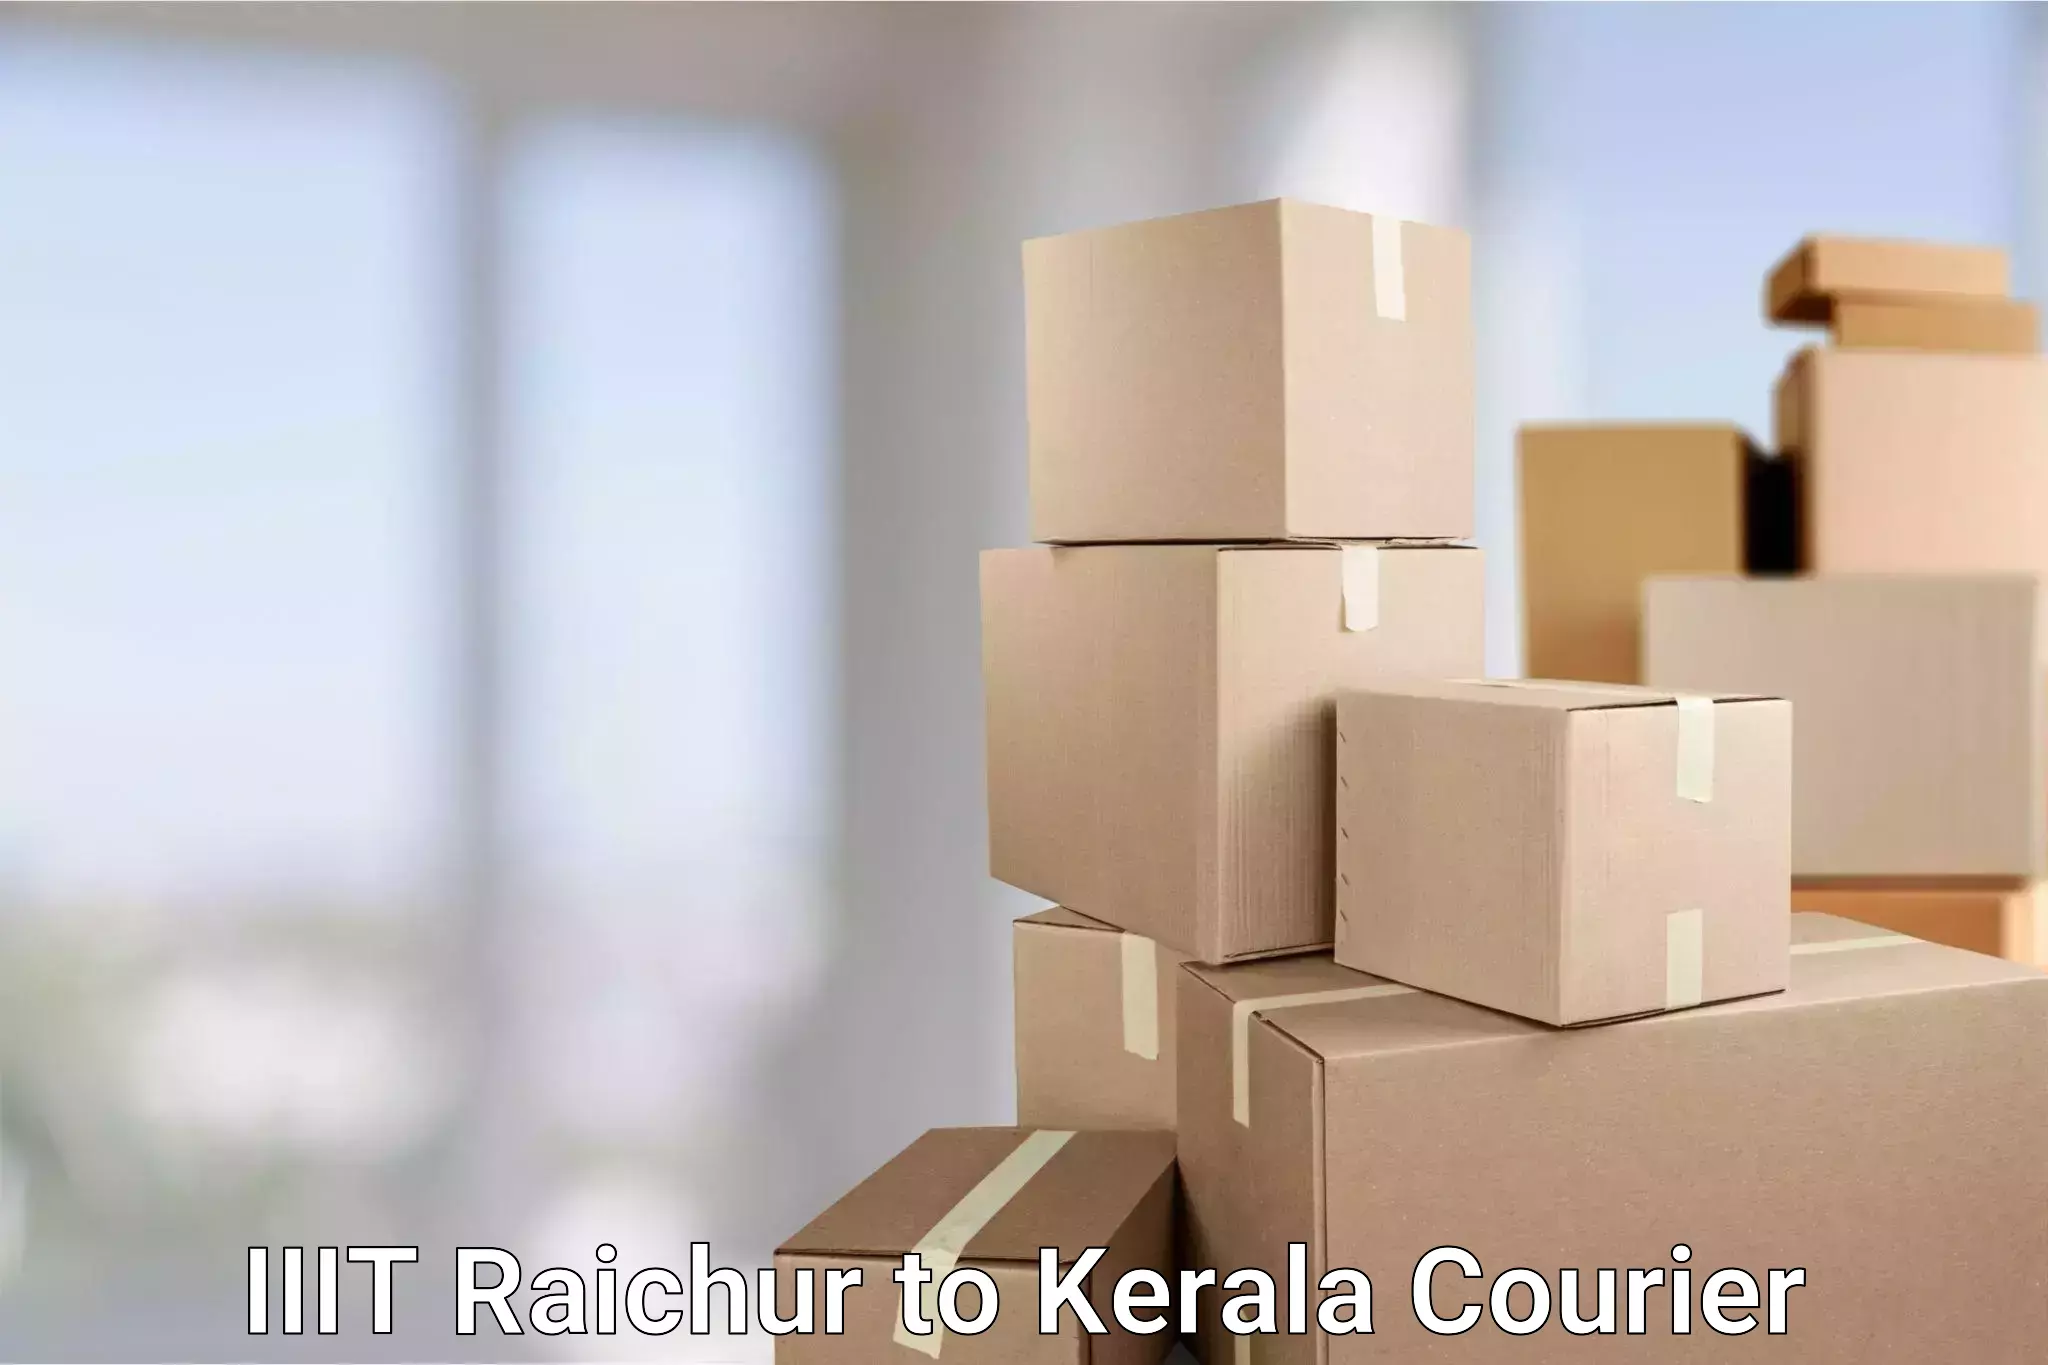 Custom logistics solutions in IIIT Raichur to Kerala